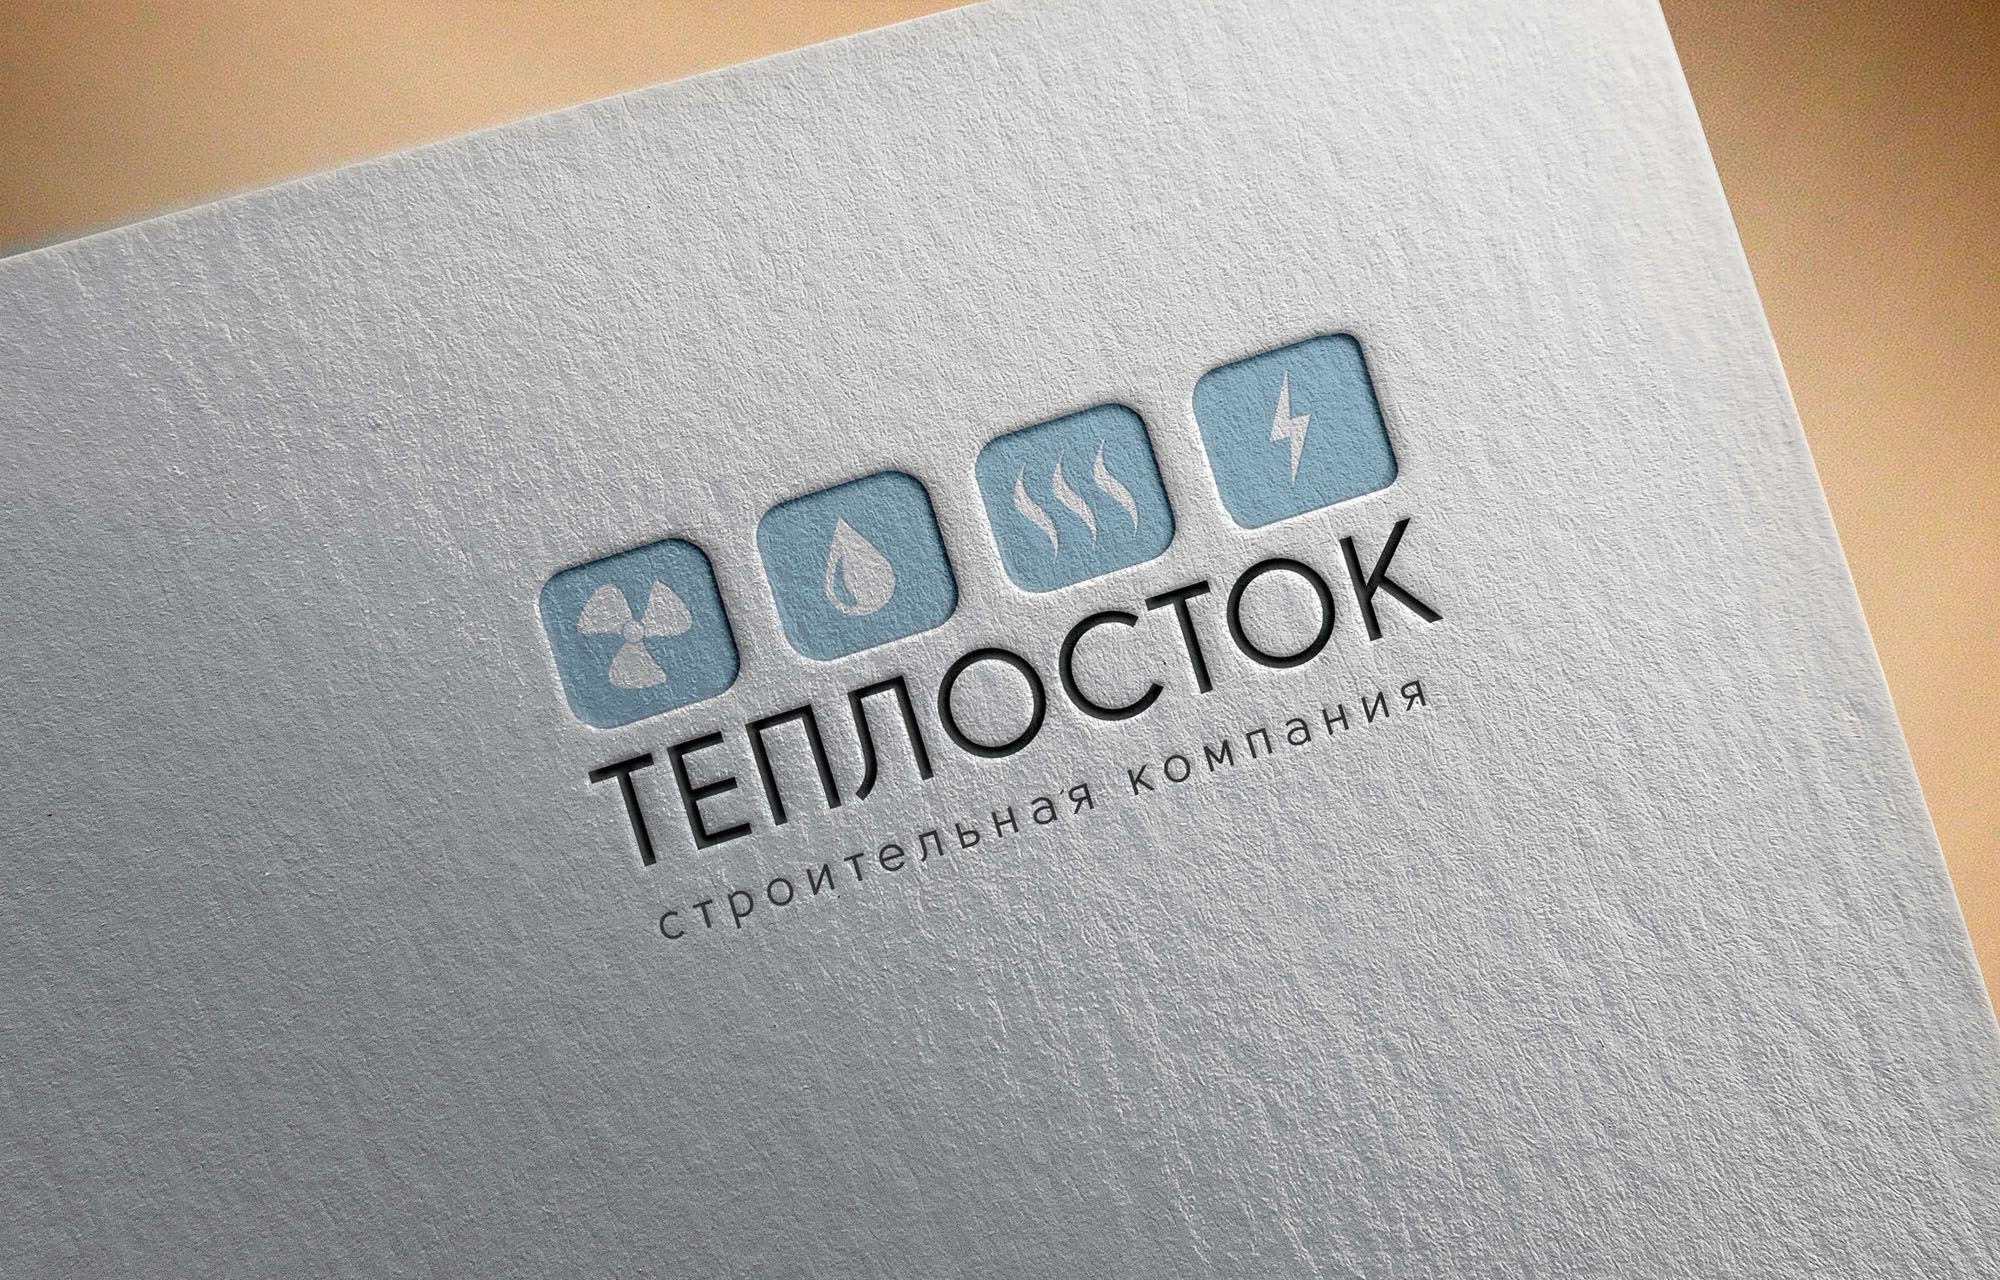 Логотип для ТеплоСток - дизайнер NataliGold